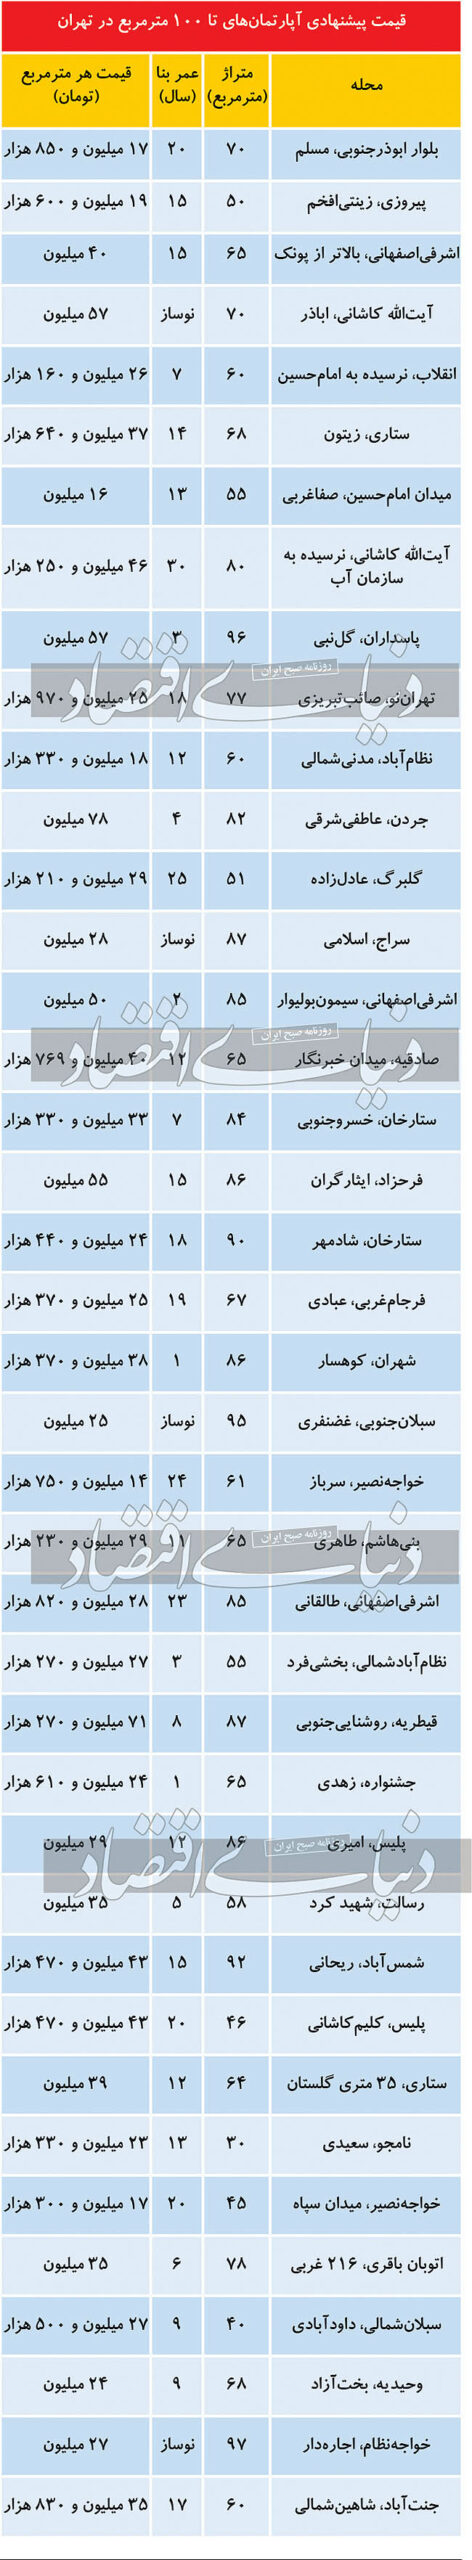 قیمت روز در بازار املاک تهران